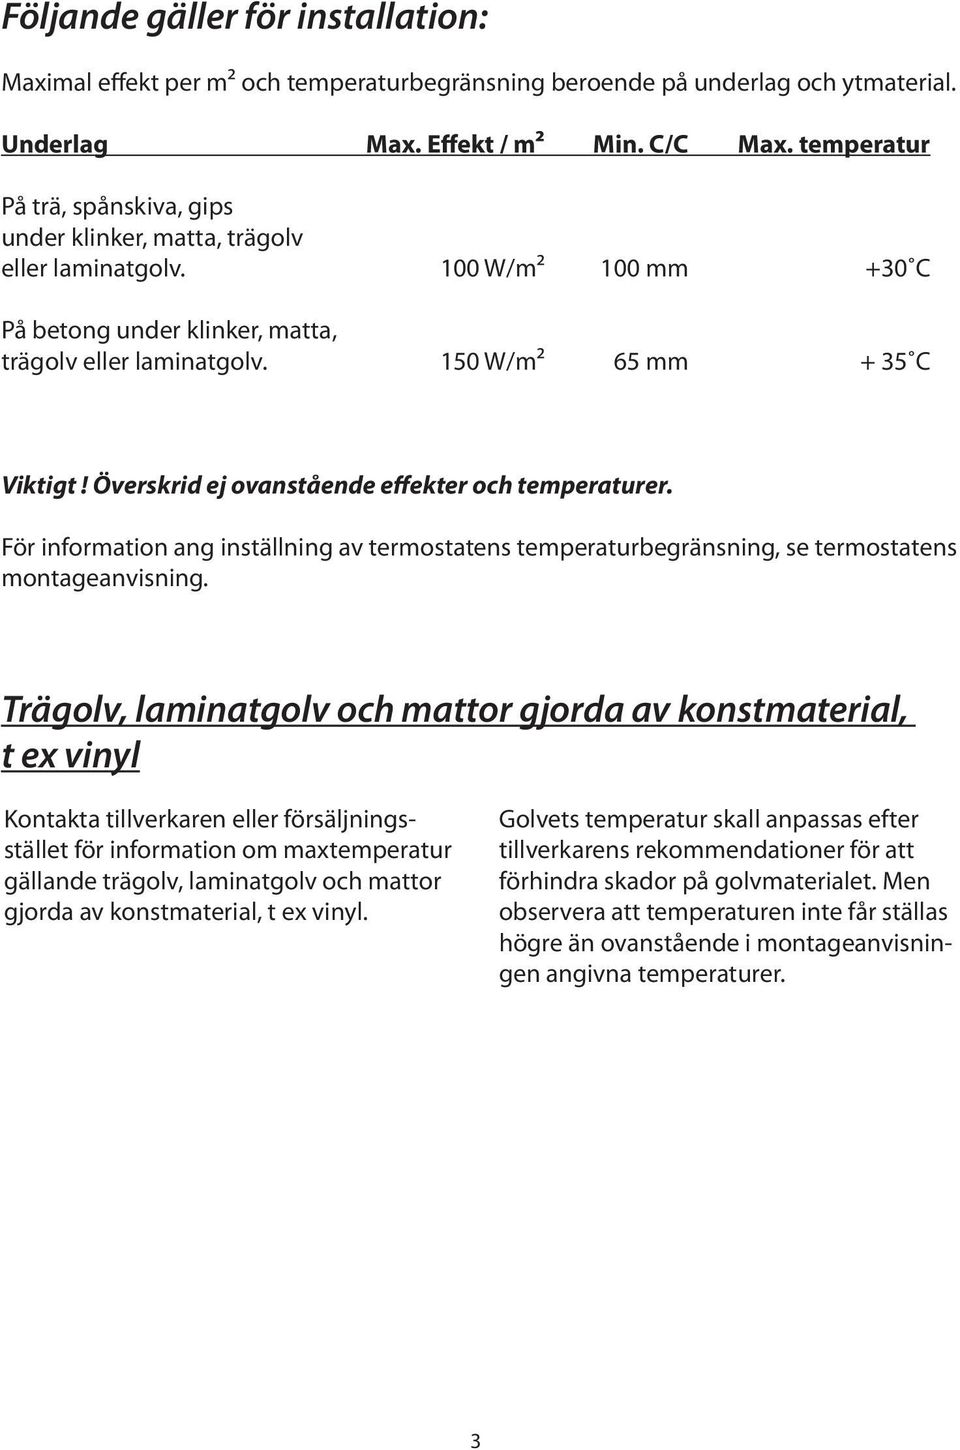 Överskrid ej ovanstående effekter och temperaturer. För information ang inställning av termostatens temperaturbegränsning, se termostatens montageanvisning.